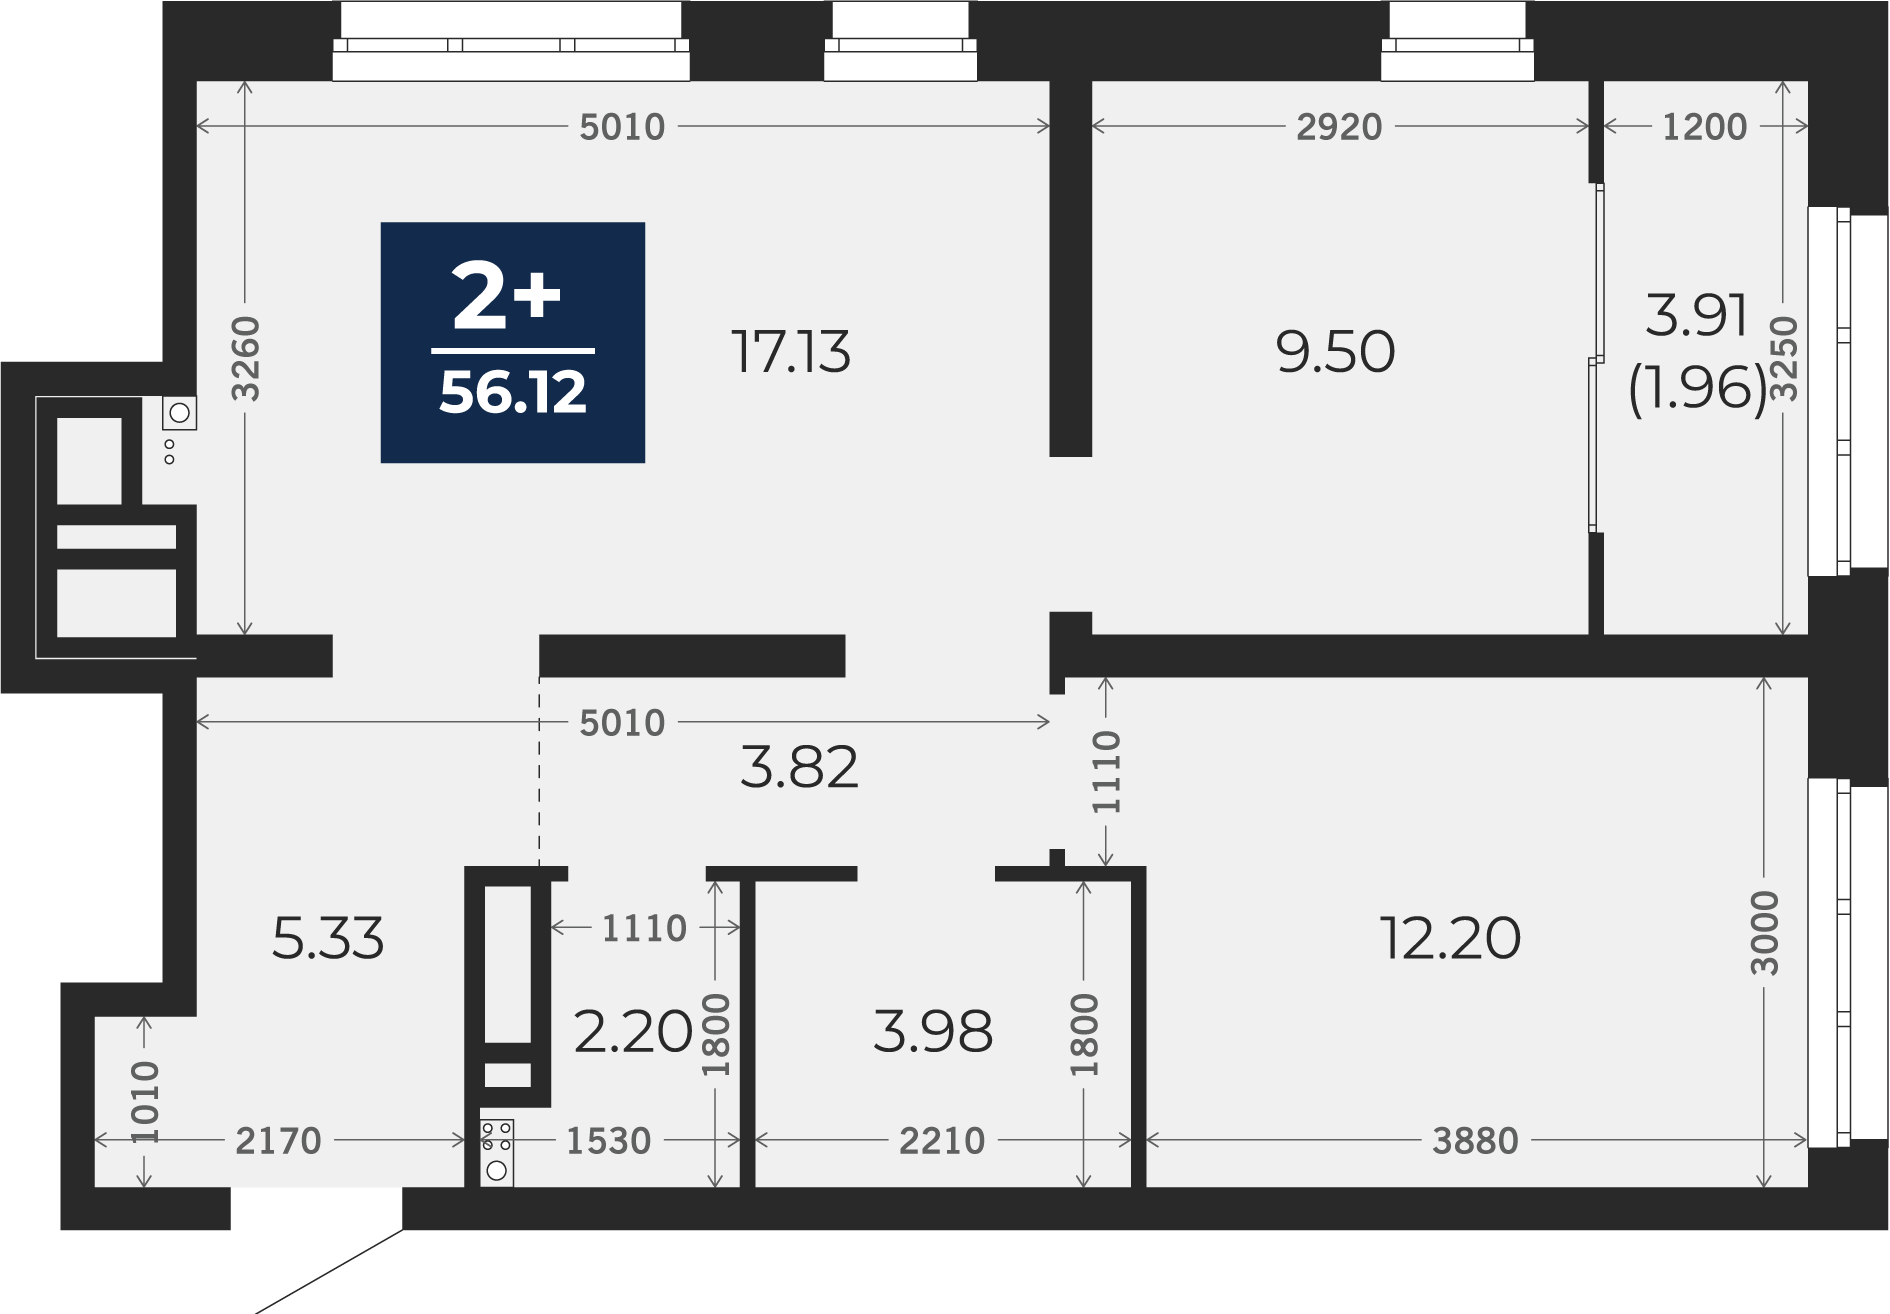 Квартира № 147, 2-комнатная, 56.12 кв. м, 13 этаж